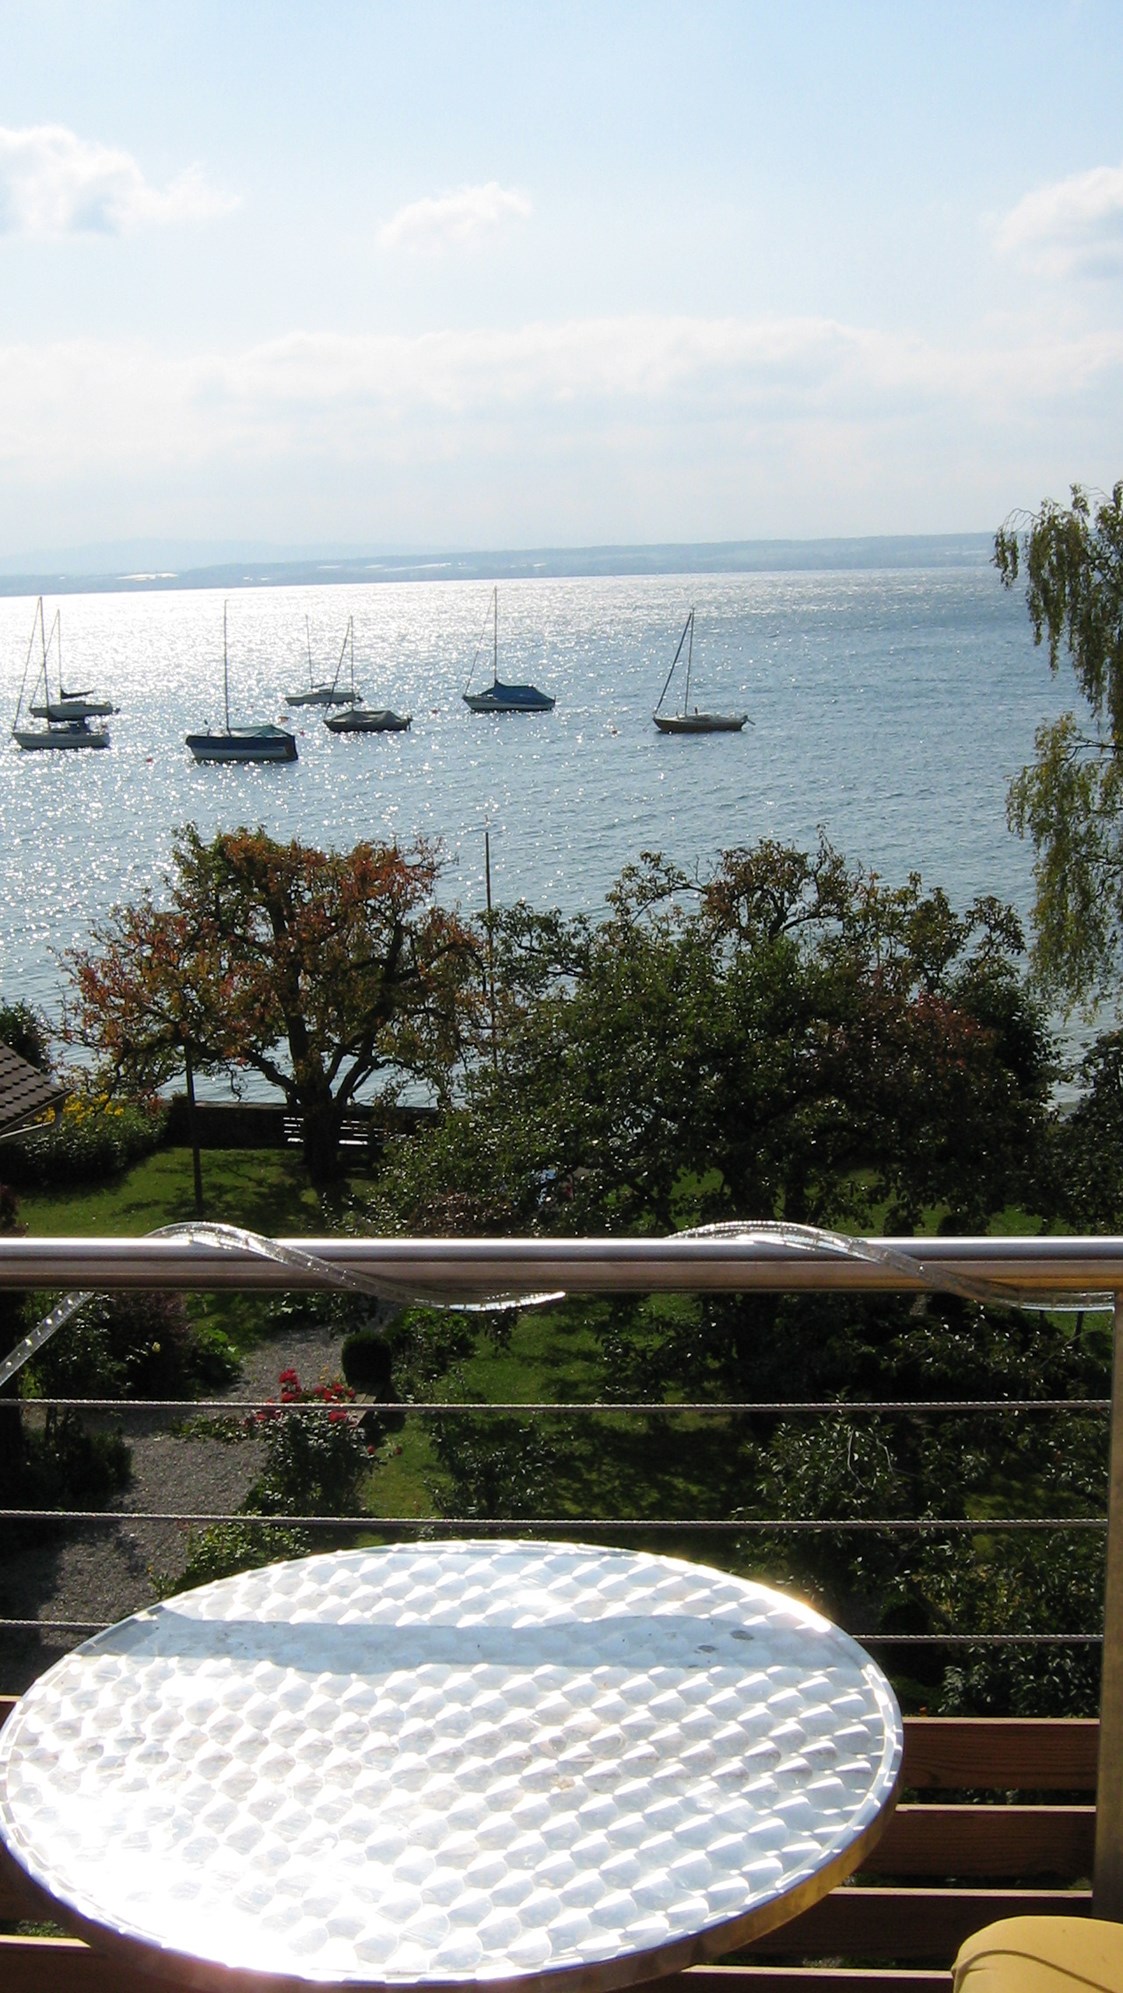 Urlaub am See: Blick vom Balkon - Panorama Hotel Sonnenstube